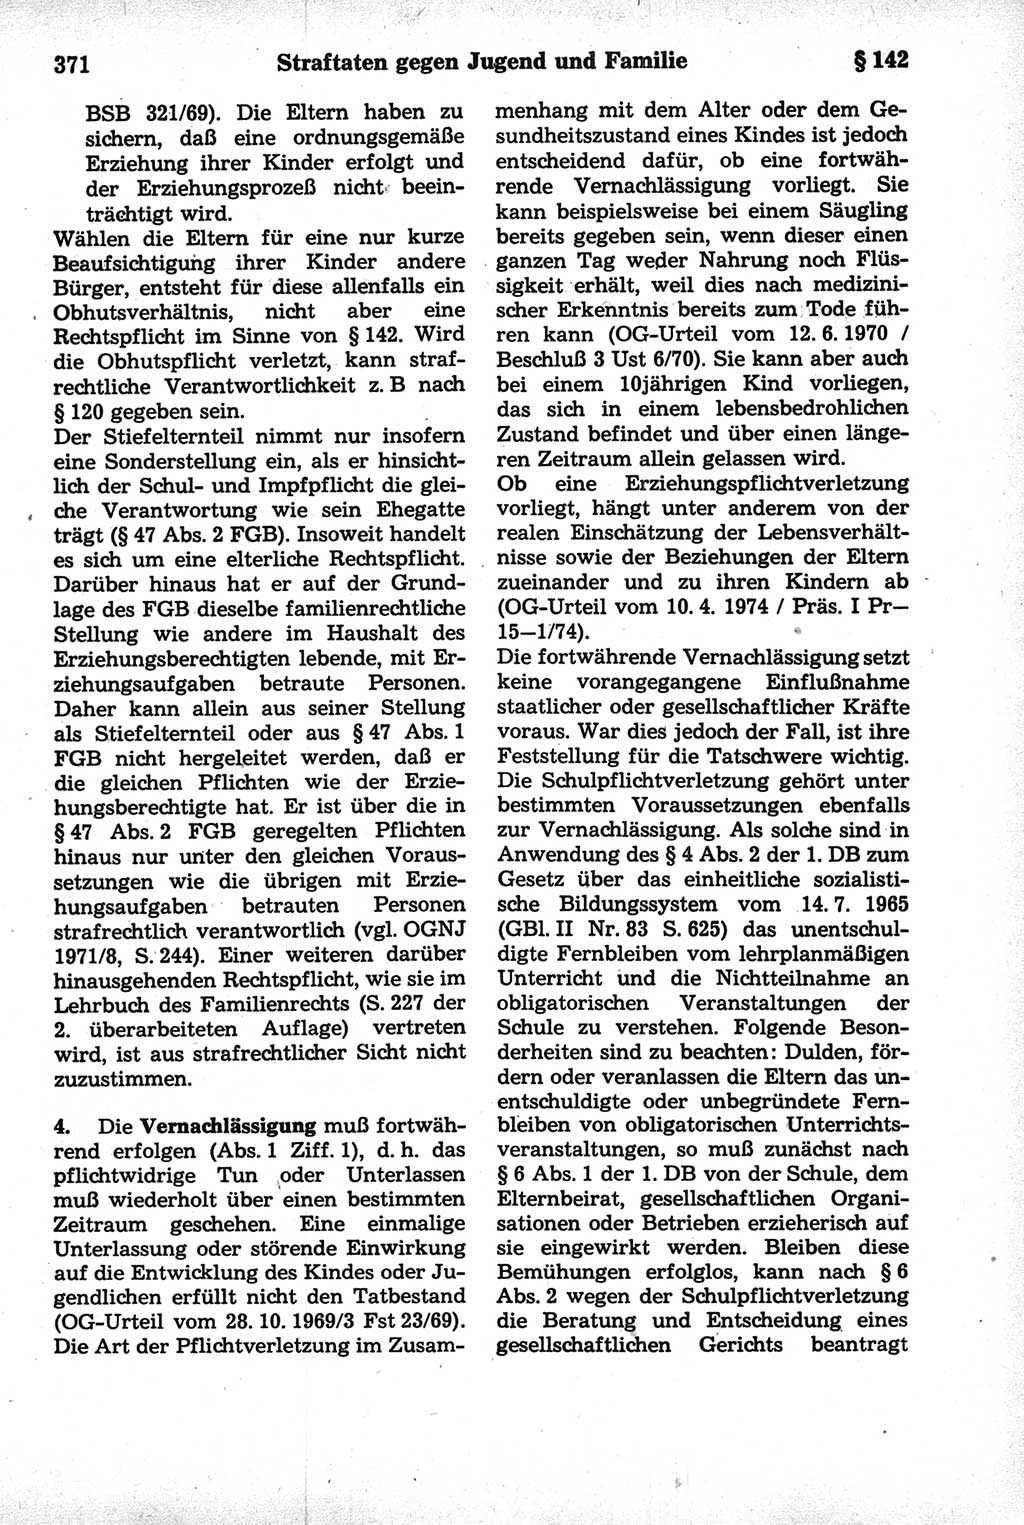 Strafrecht der Deutschen Demokratischen Republik (DDR), Kommentar zum Strafgesetzbuch (StGB) 1981, Seite 371 (Strafr. DDR Komm. StGB 1981, S. 371)